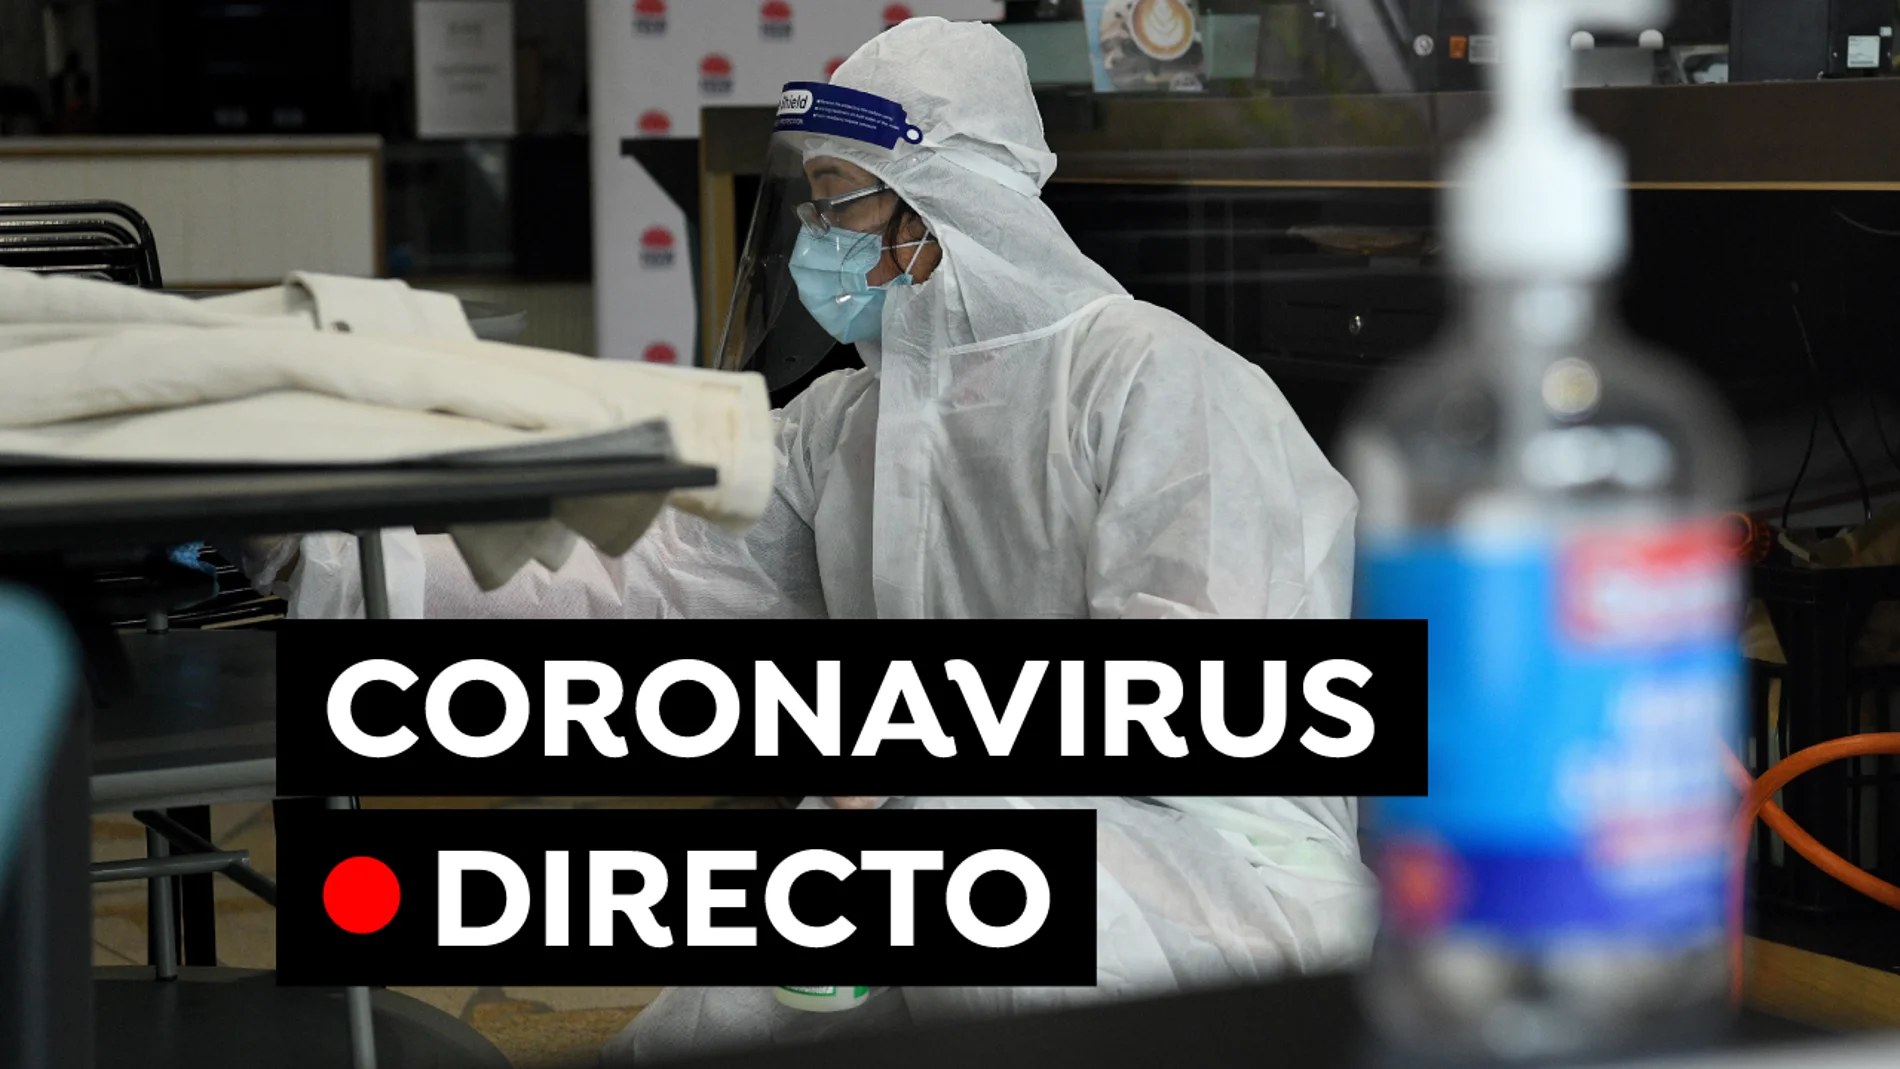 Coronavirus España: Vacuna contra el COVID-19 y última hora de restricciones, en directo